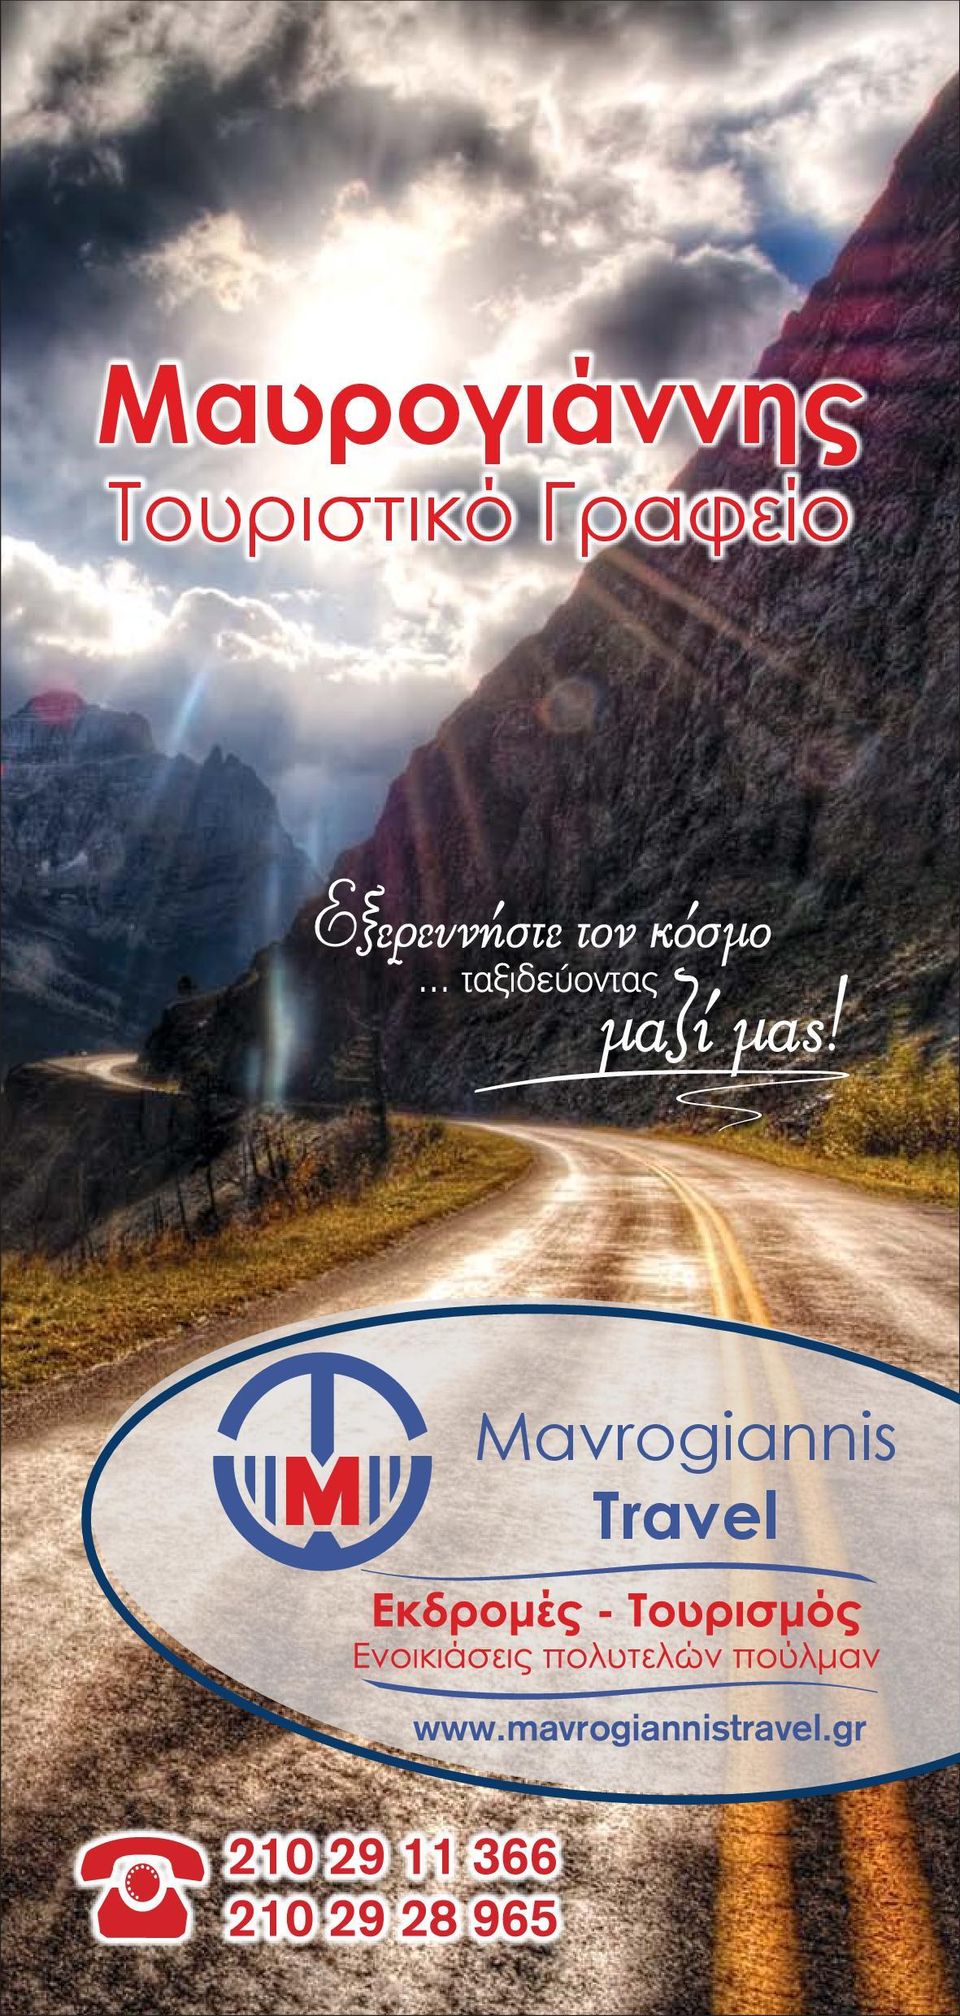 Μαυρογιάννης. Τουριστικό Γραφείο. Mavrogiannis Travel. - PDF Free Download